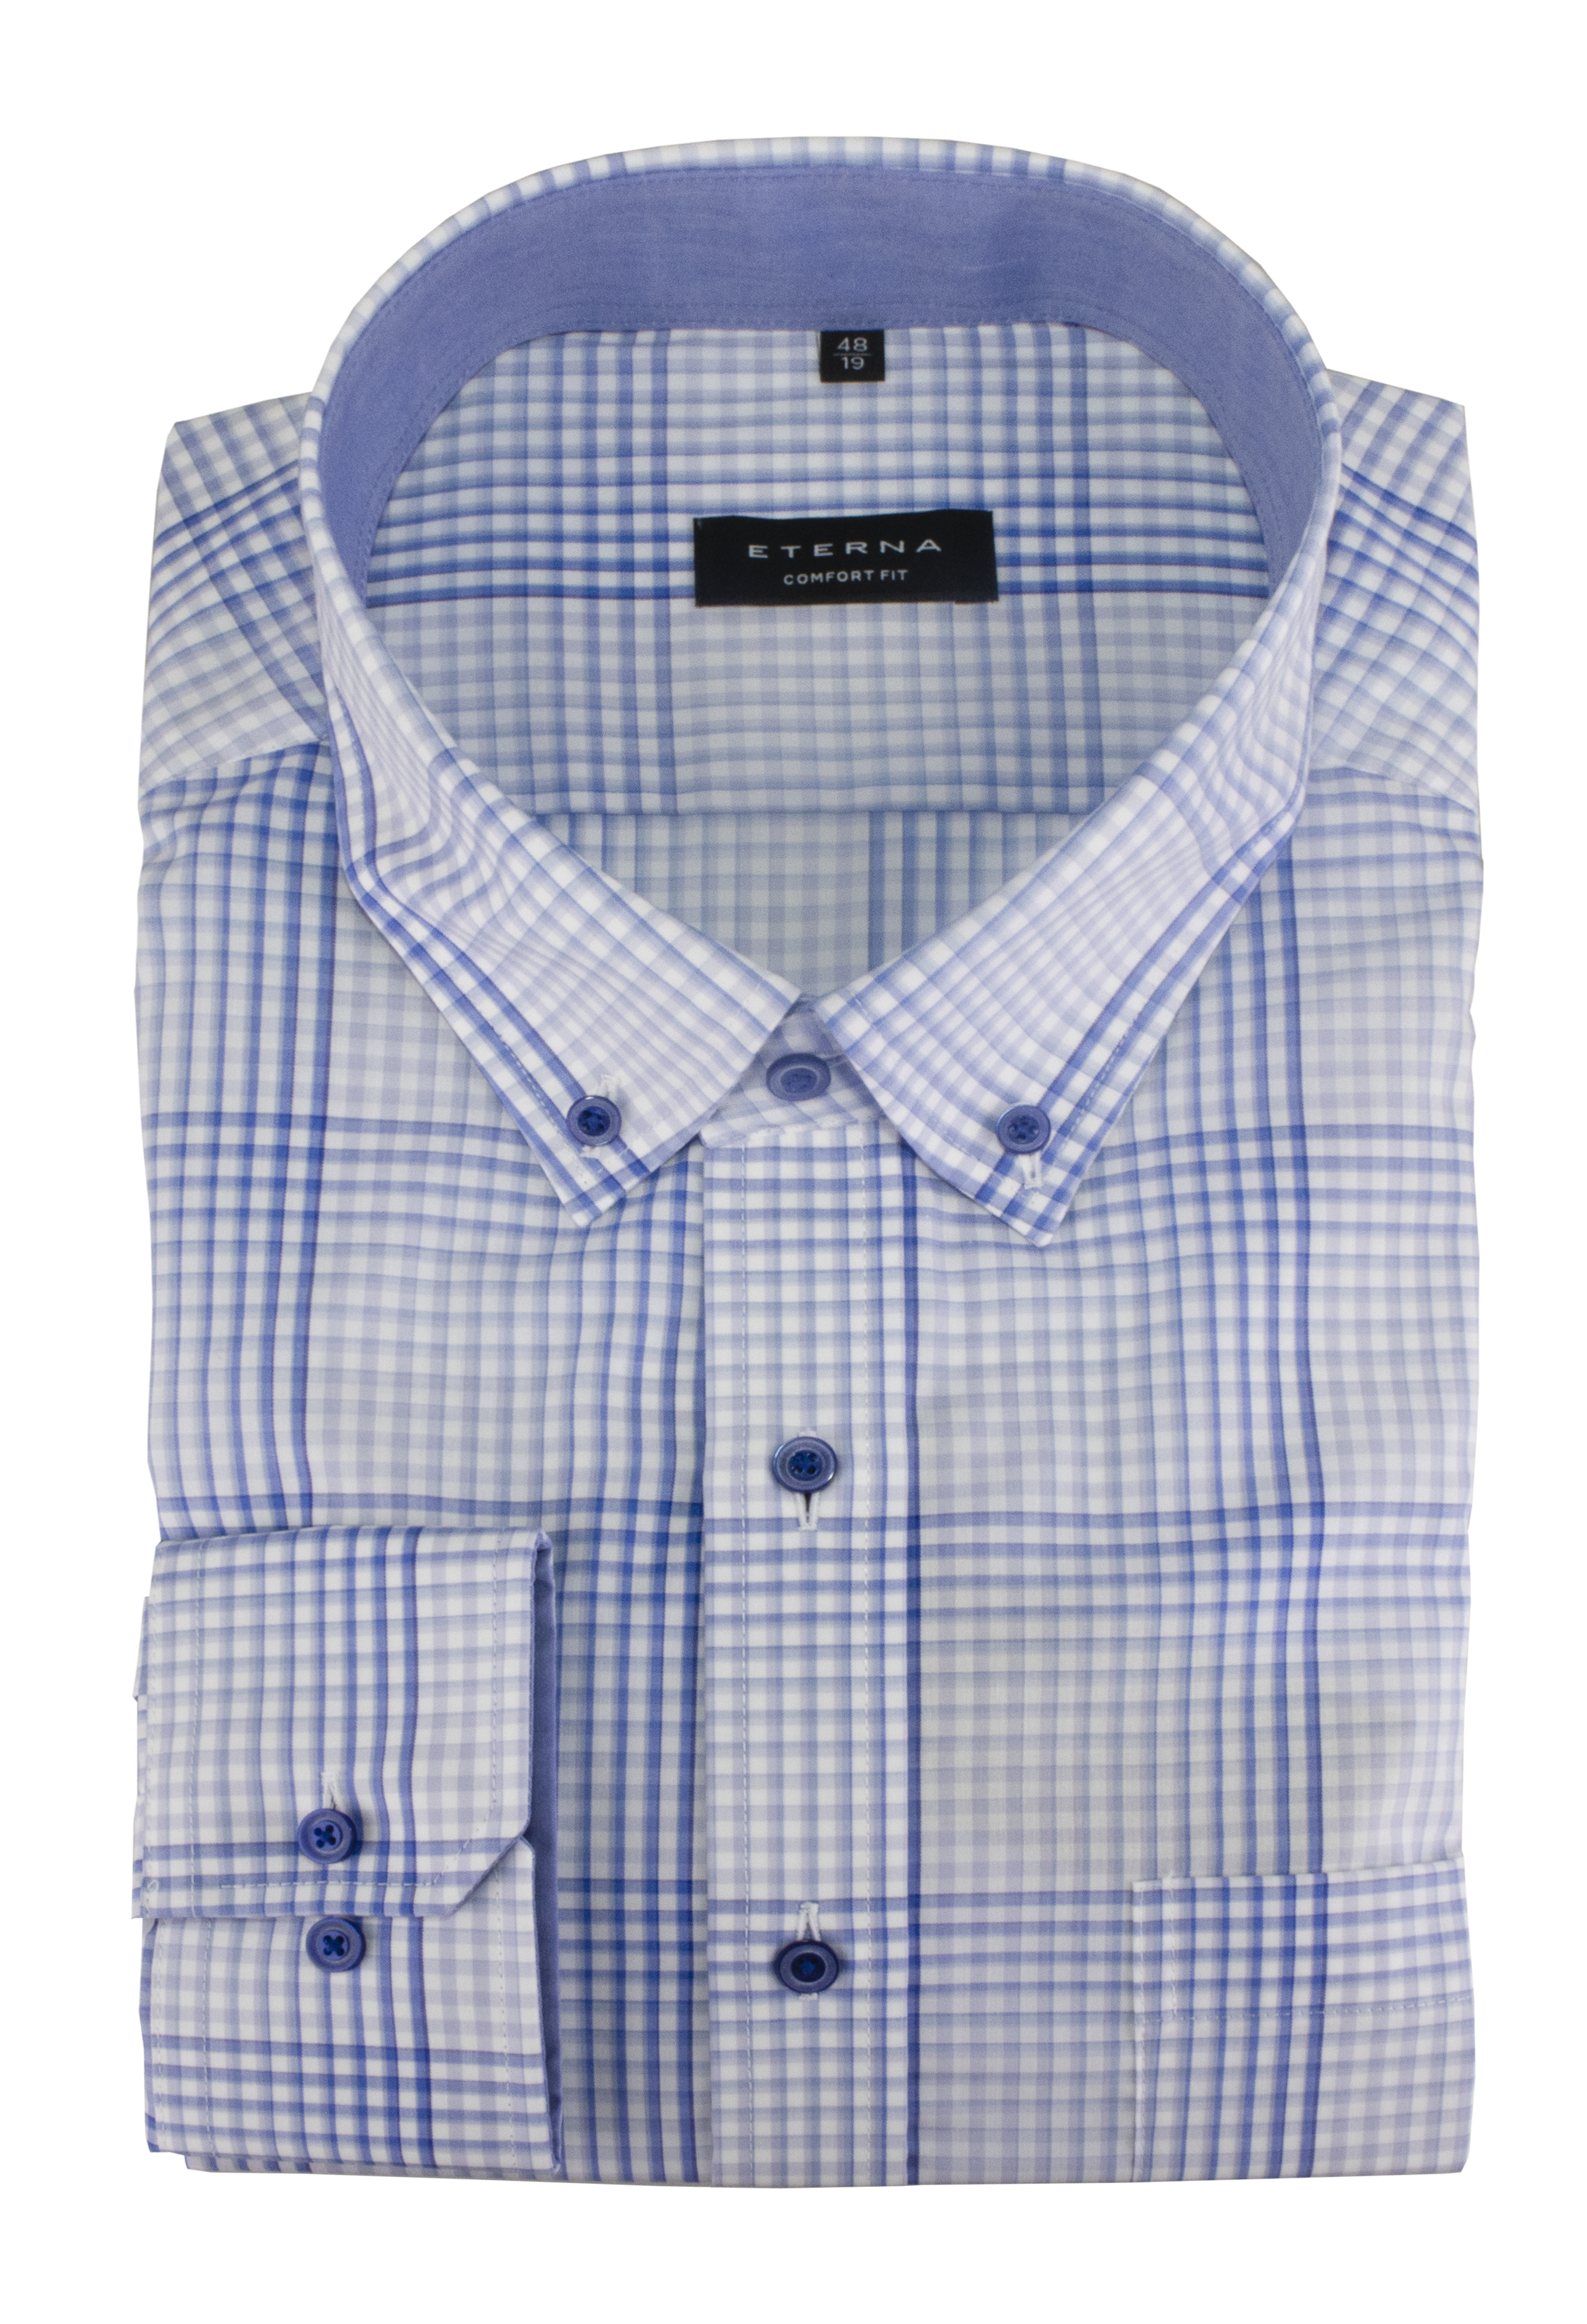 Eterna Long Sleeve Shirt Blue Checked 3683-11-e144 - Comfort Fit Shirt Men